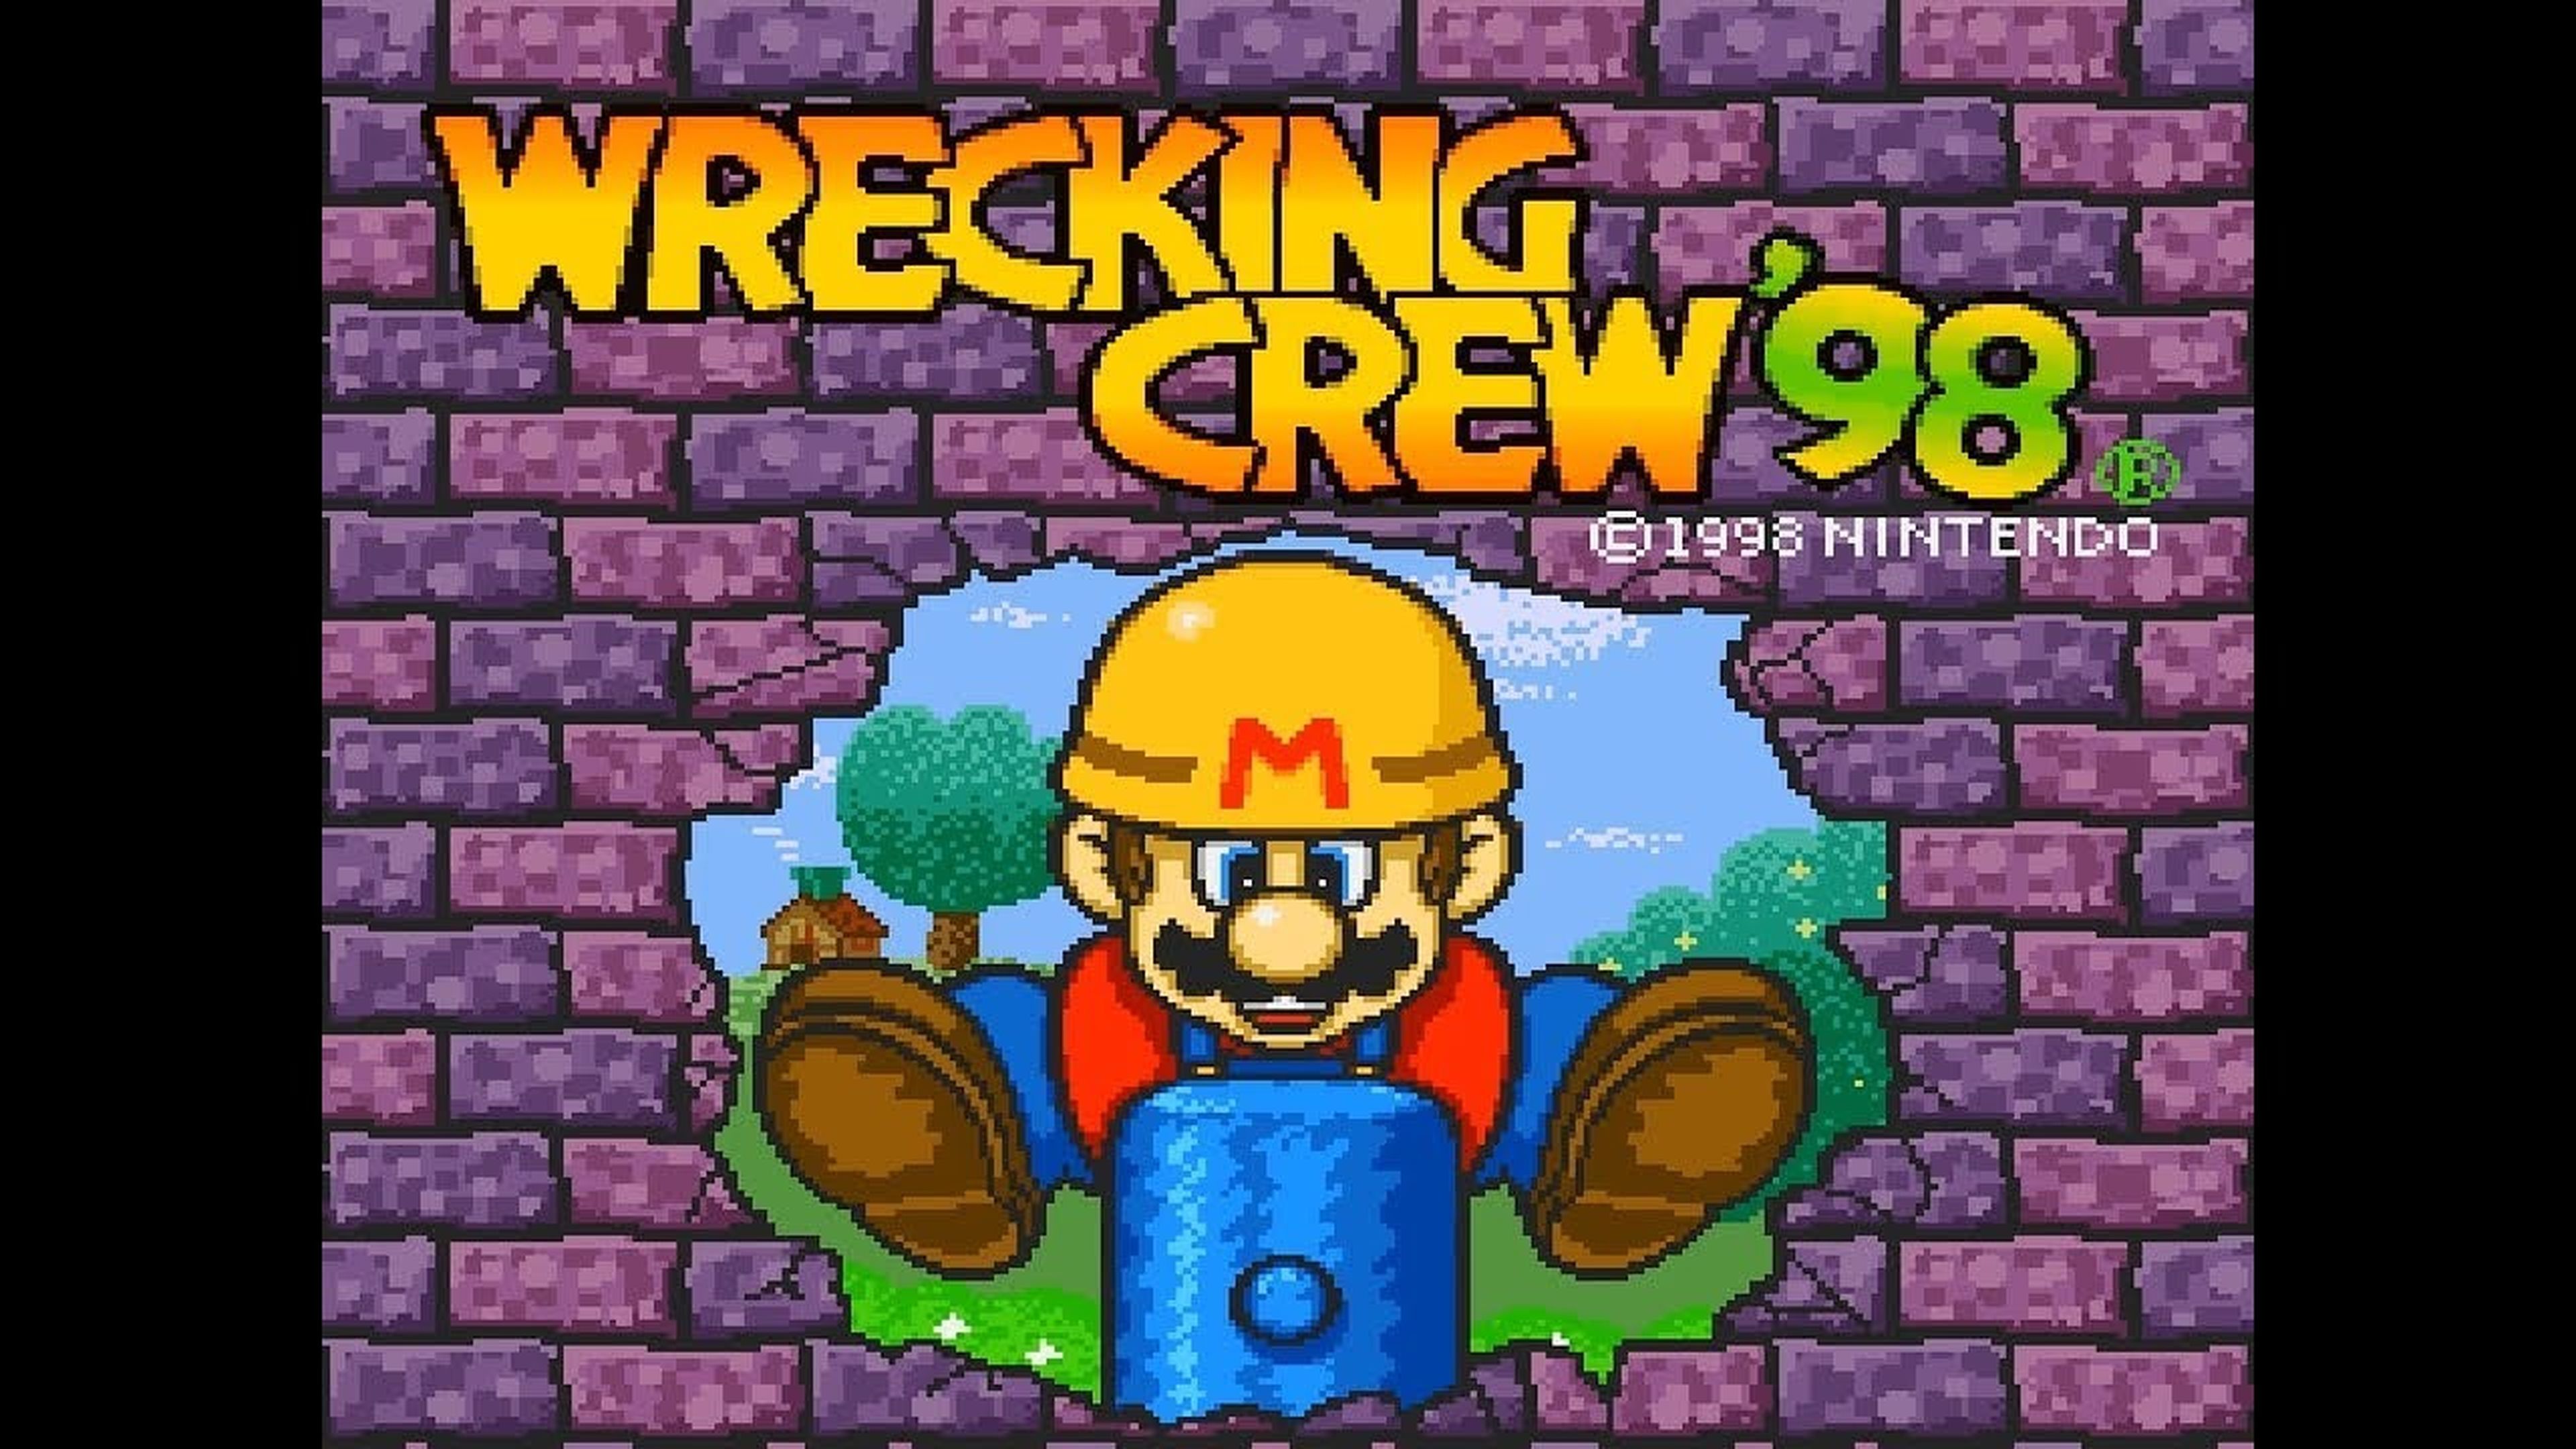 Wrecking Crew '98